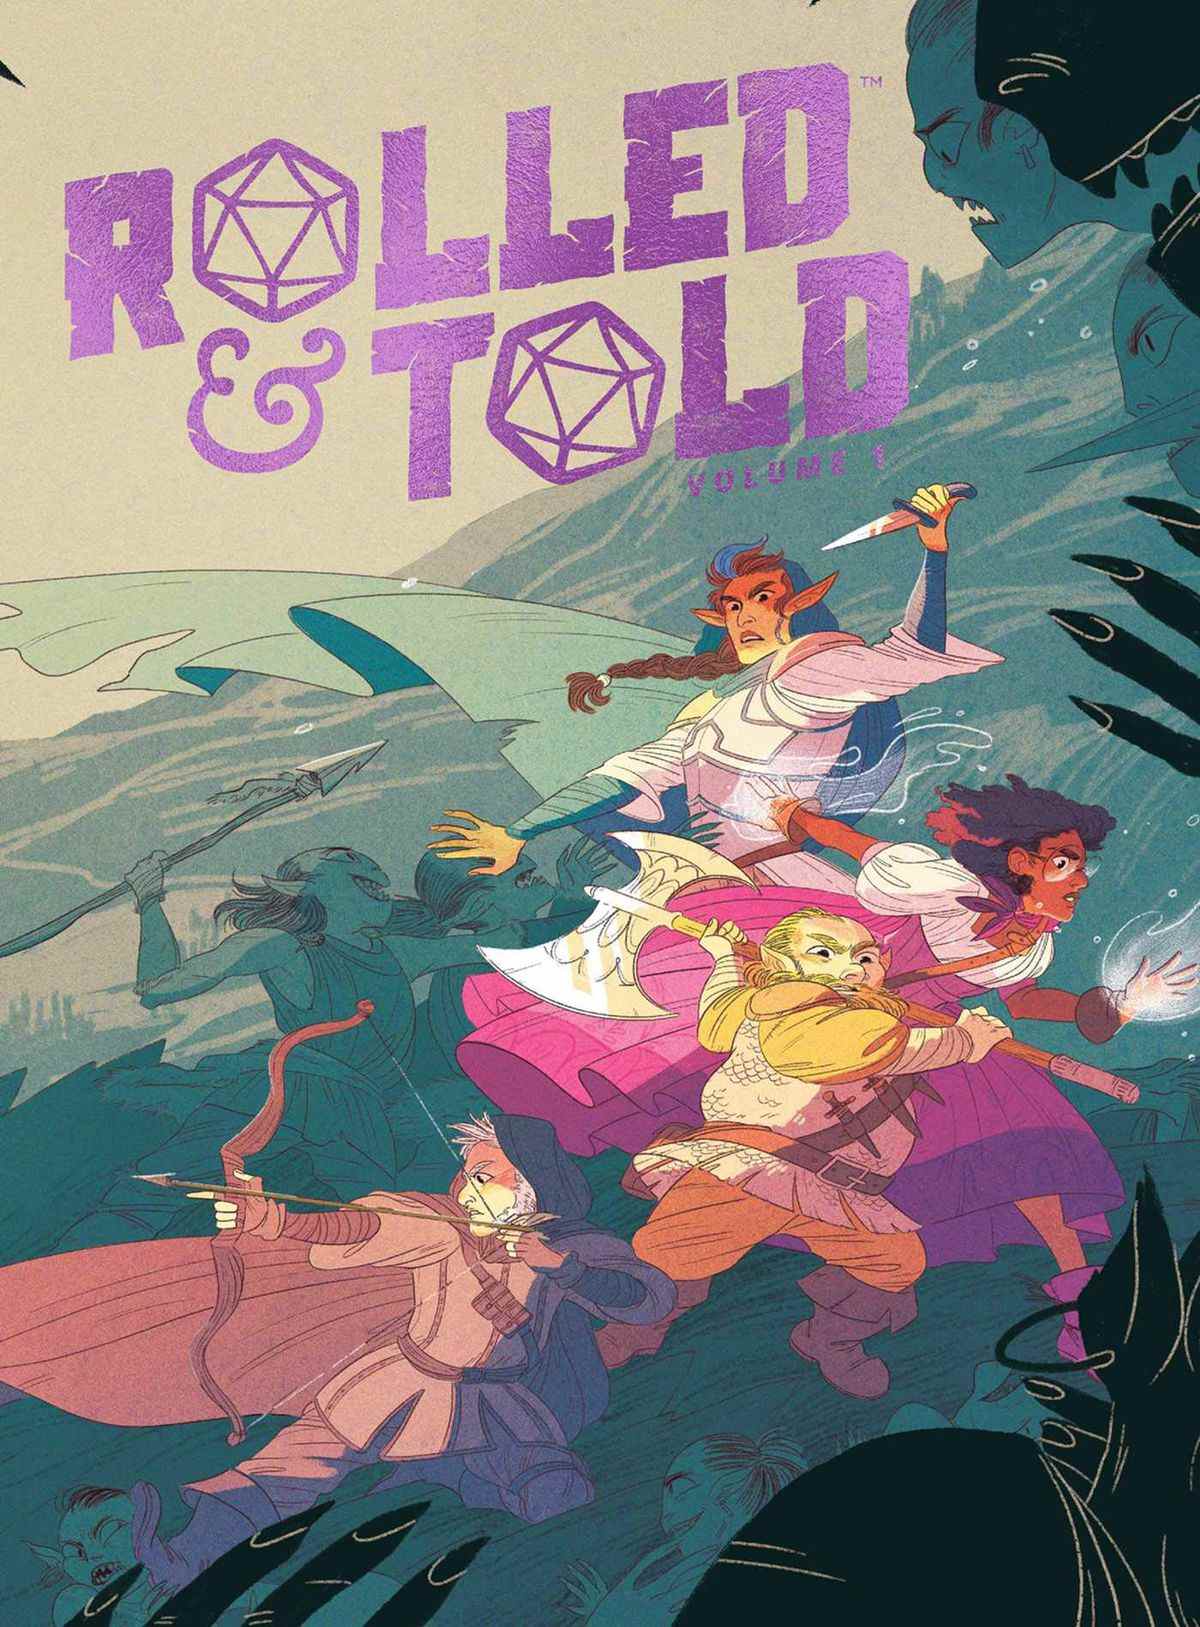 Pochette pour Rolled &  Told Volume 1 montre un groupe de héros rendus au pastel.